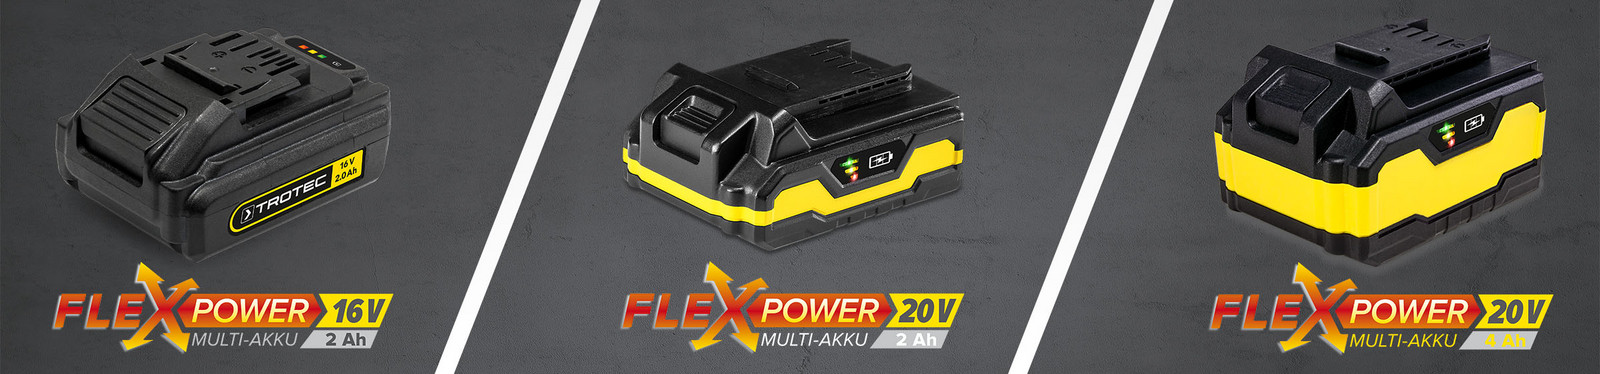 Flexpower – inovativni sustav višenamjenske punjive baterije proizvođača Trotec